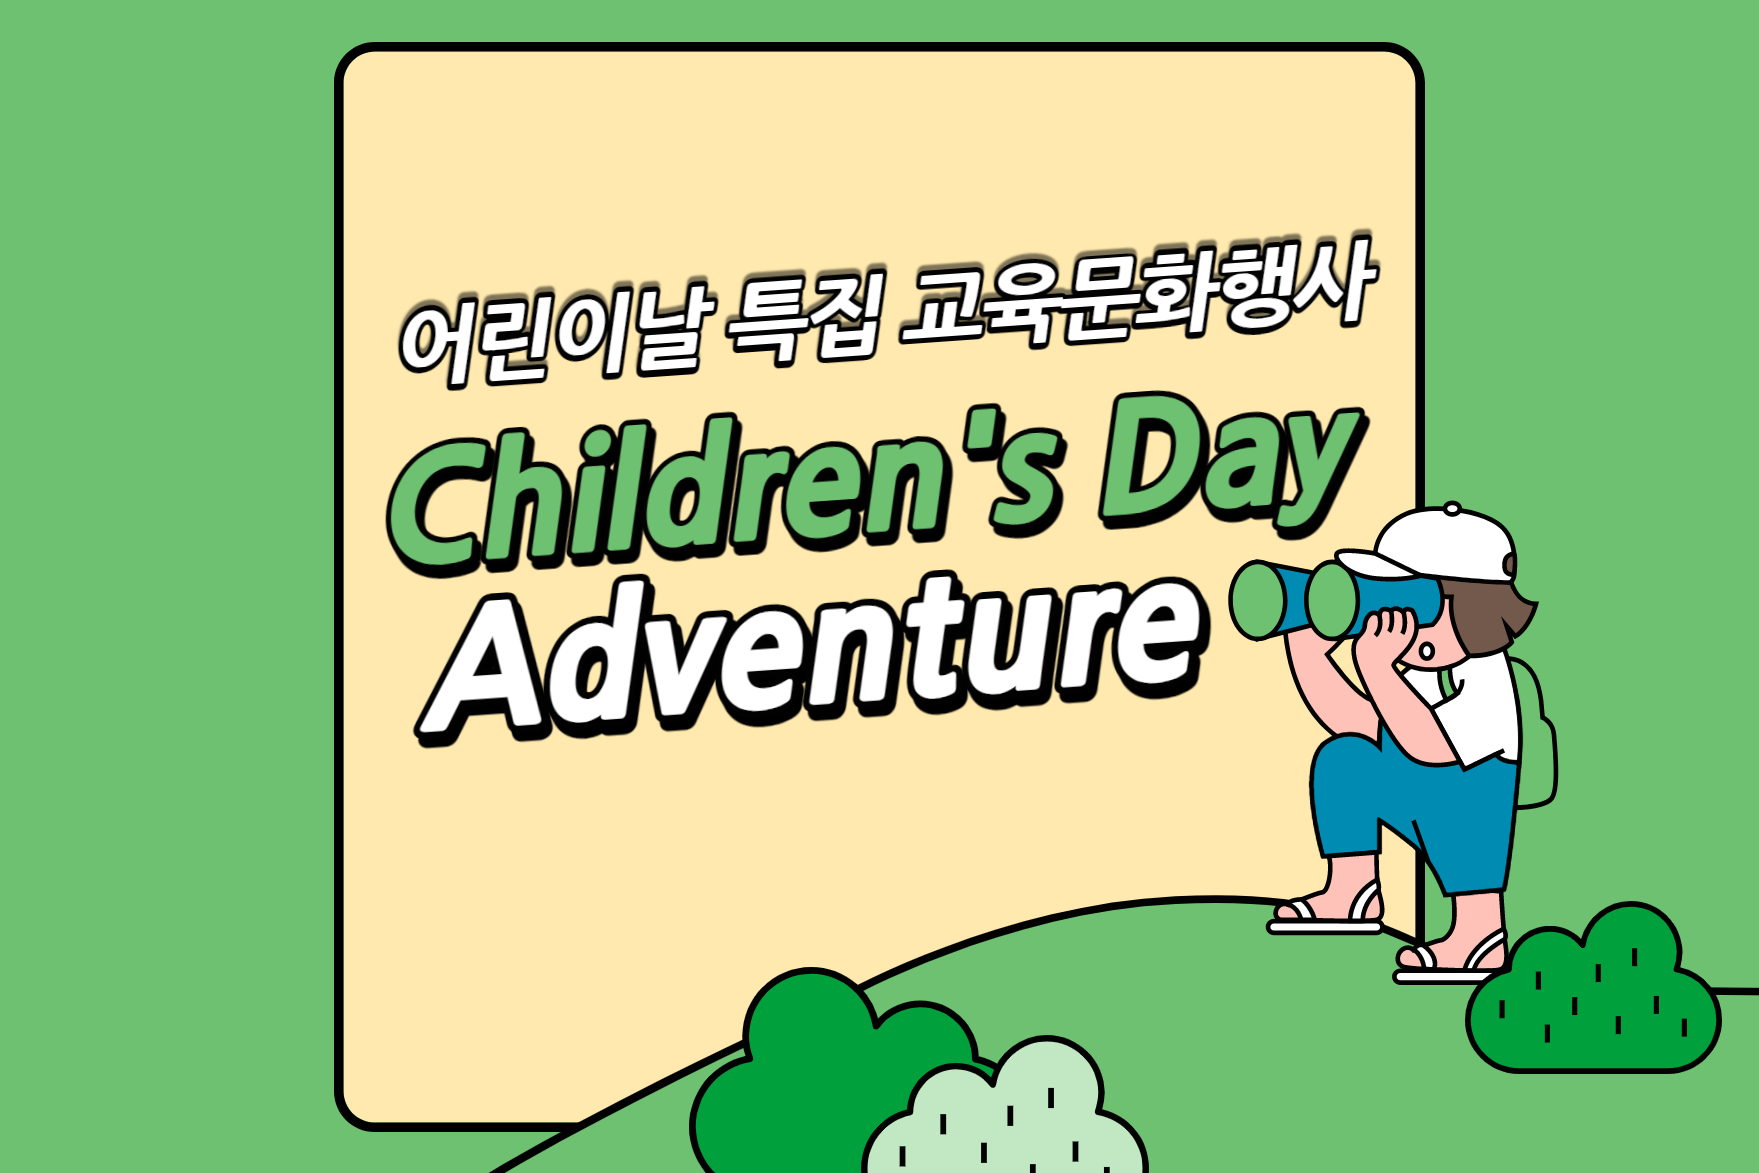 [비대면] Adventure 어린이날 특별이벤트